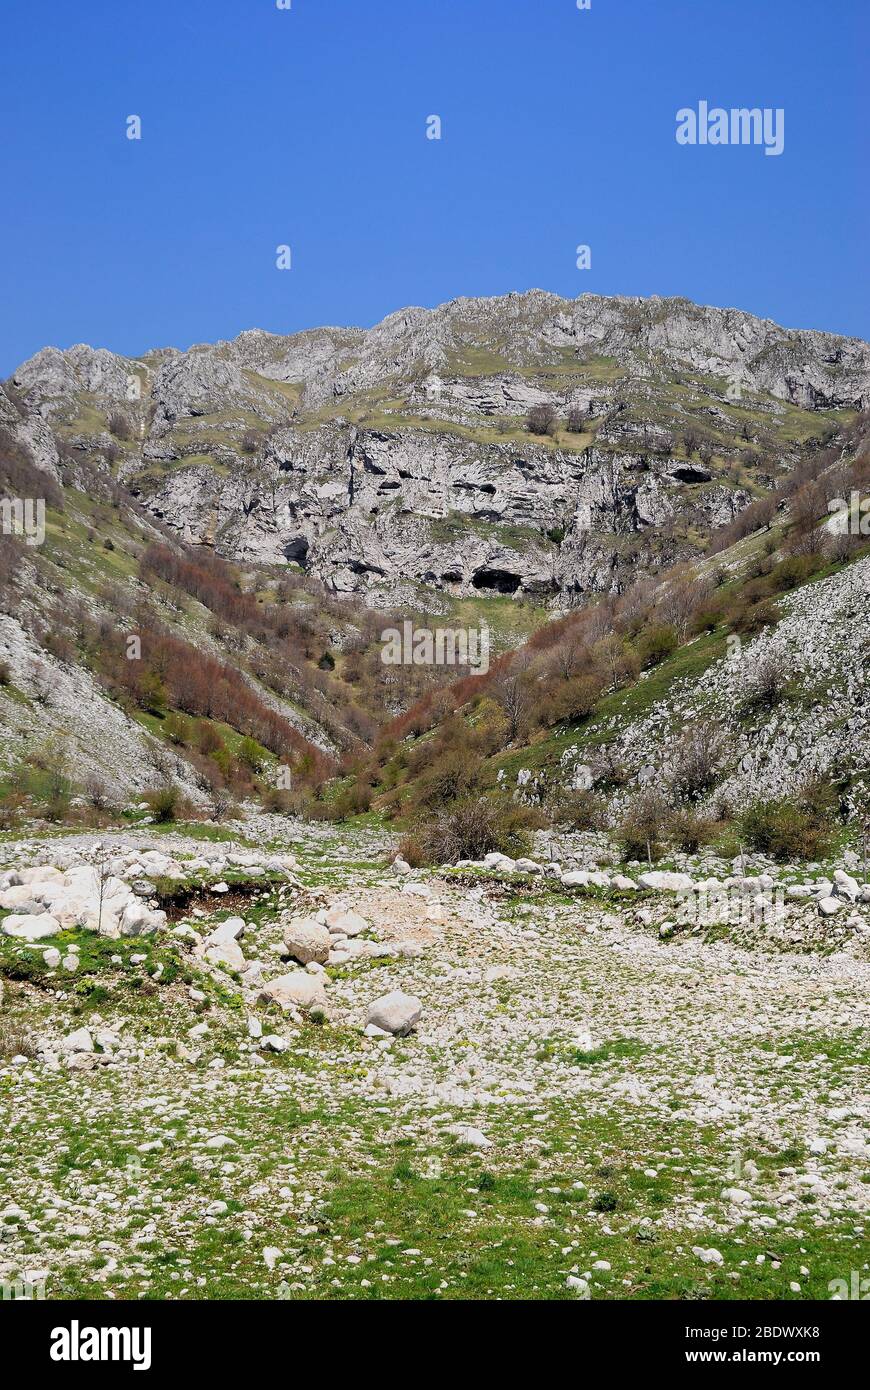 La montagne Matese. Le Matese est une chaîne de montagnes dans le sud des Apennines, dans le sud de l'Italie. Banque D'Images